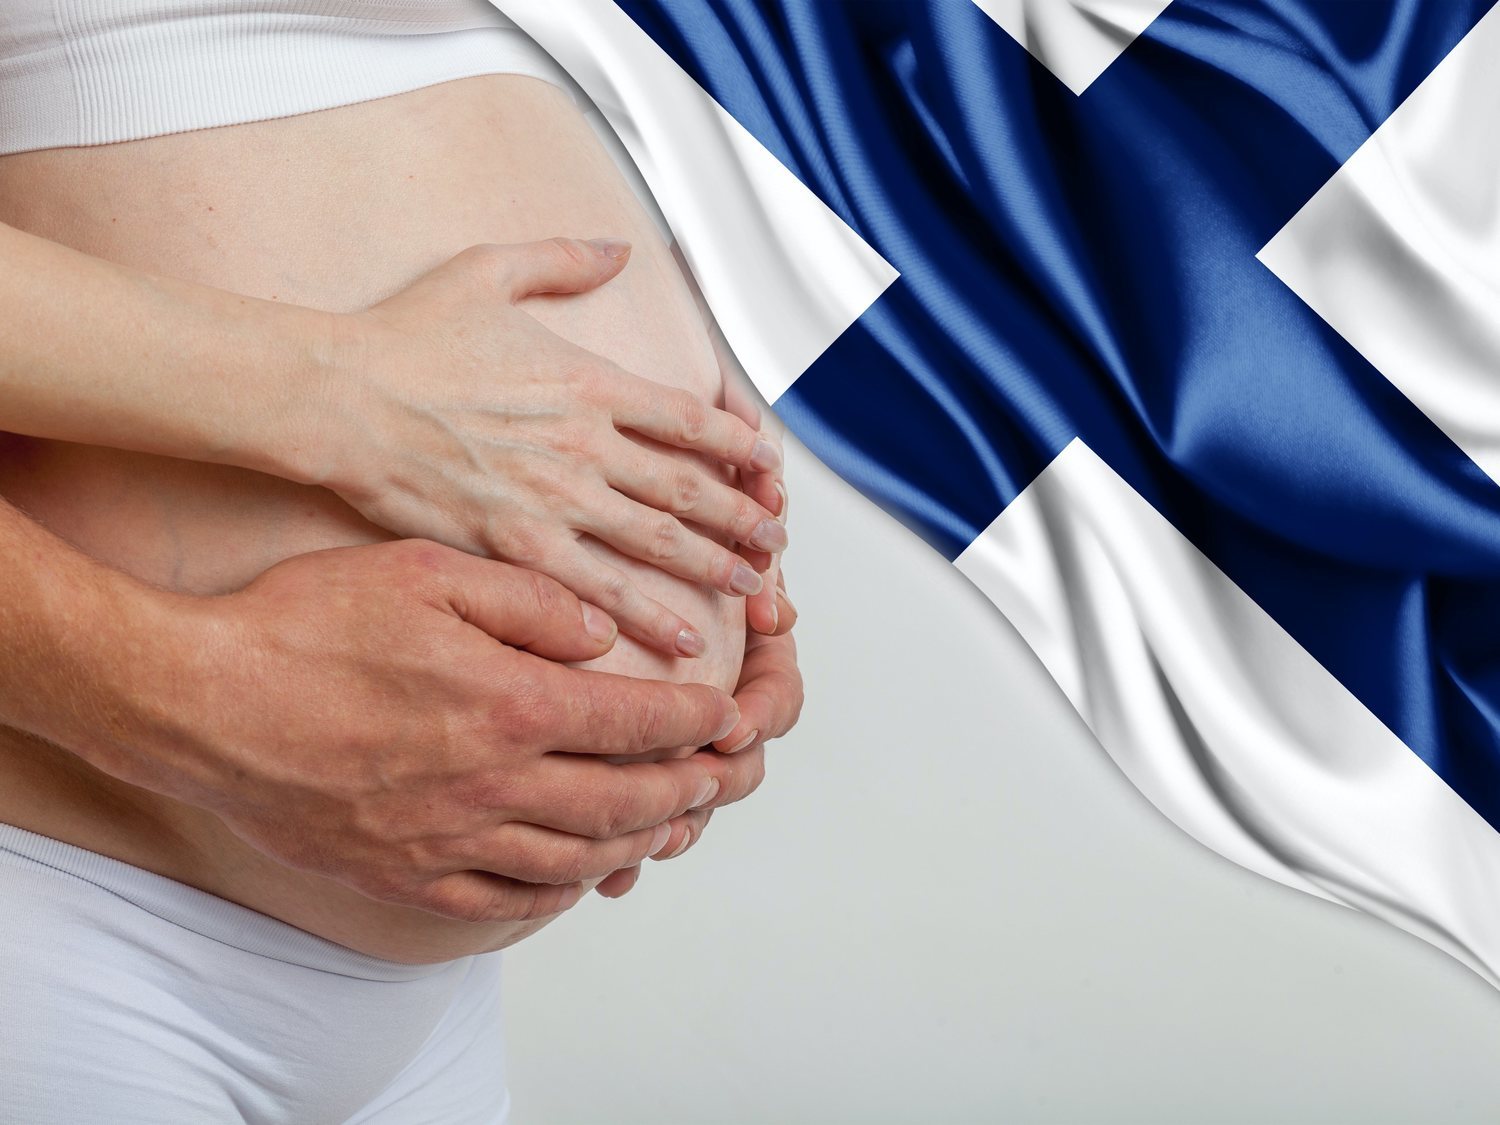 Un pueblo de Finlandia da 10.000 euros por tener un hijo